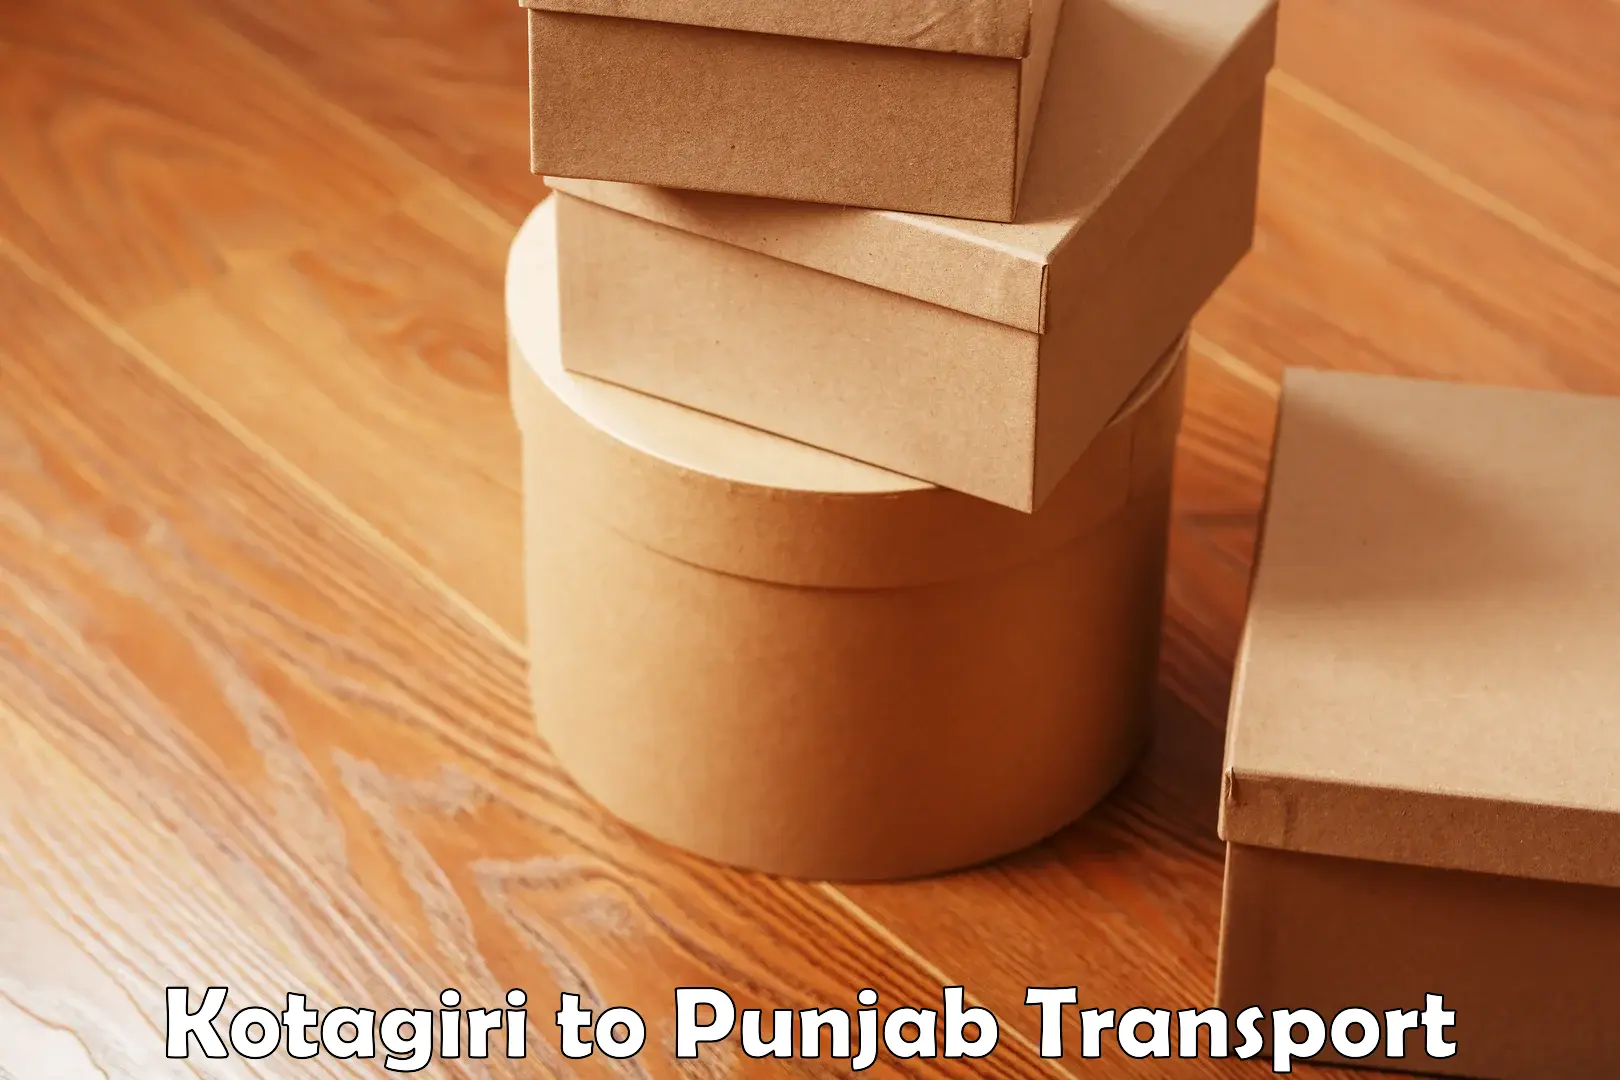 Interstate transport services Kotagiri to Punjab